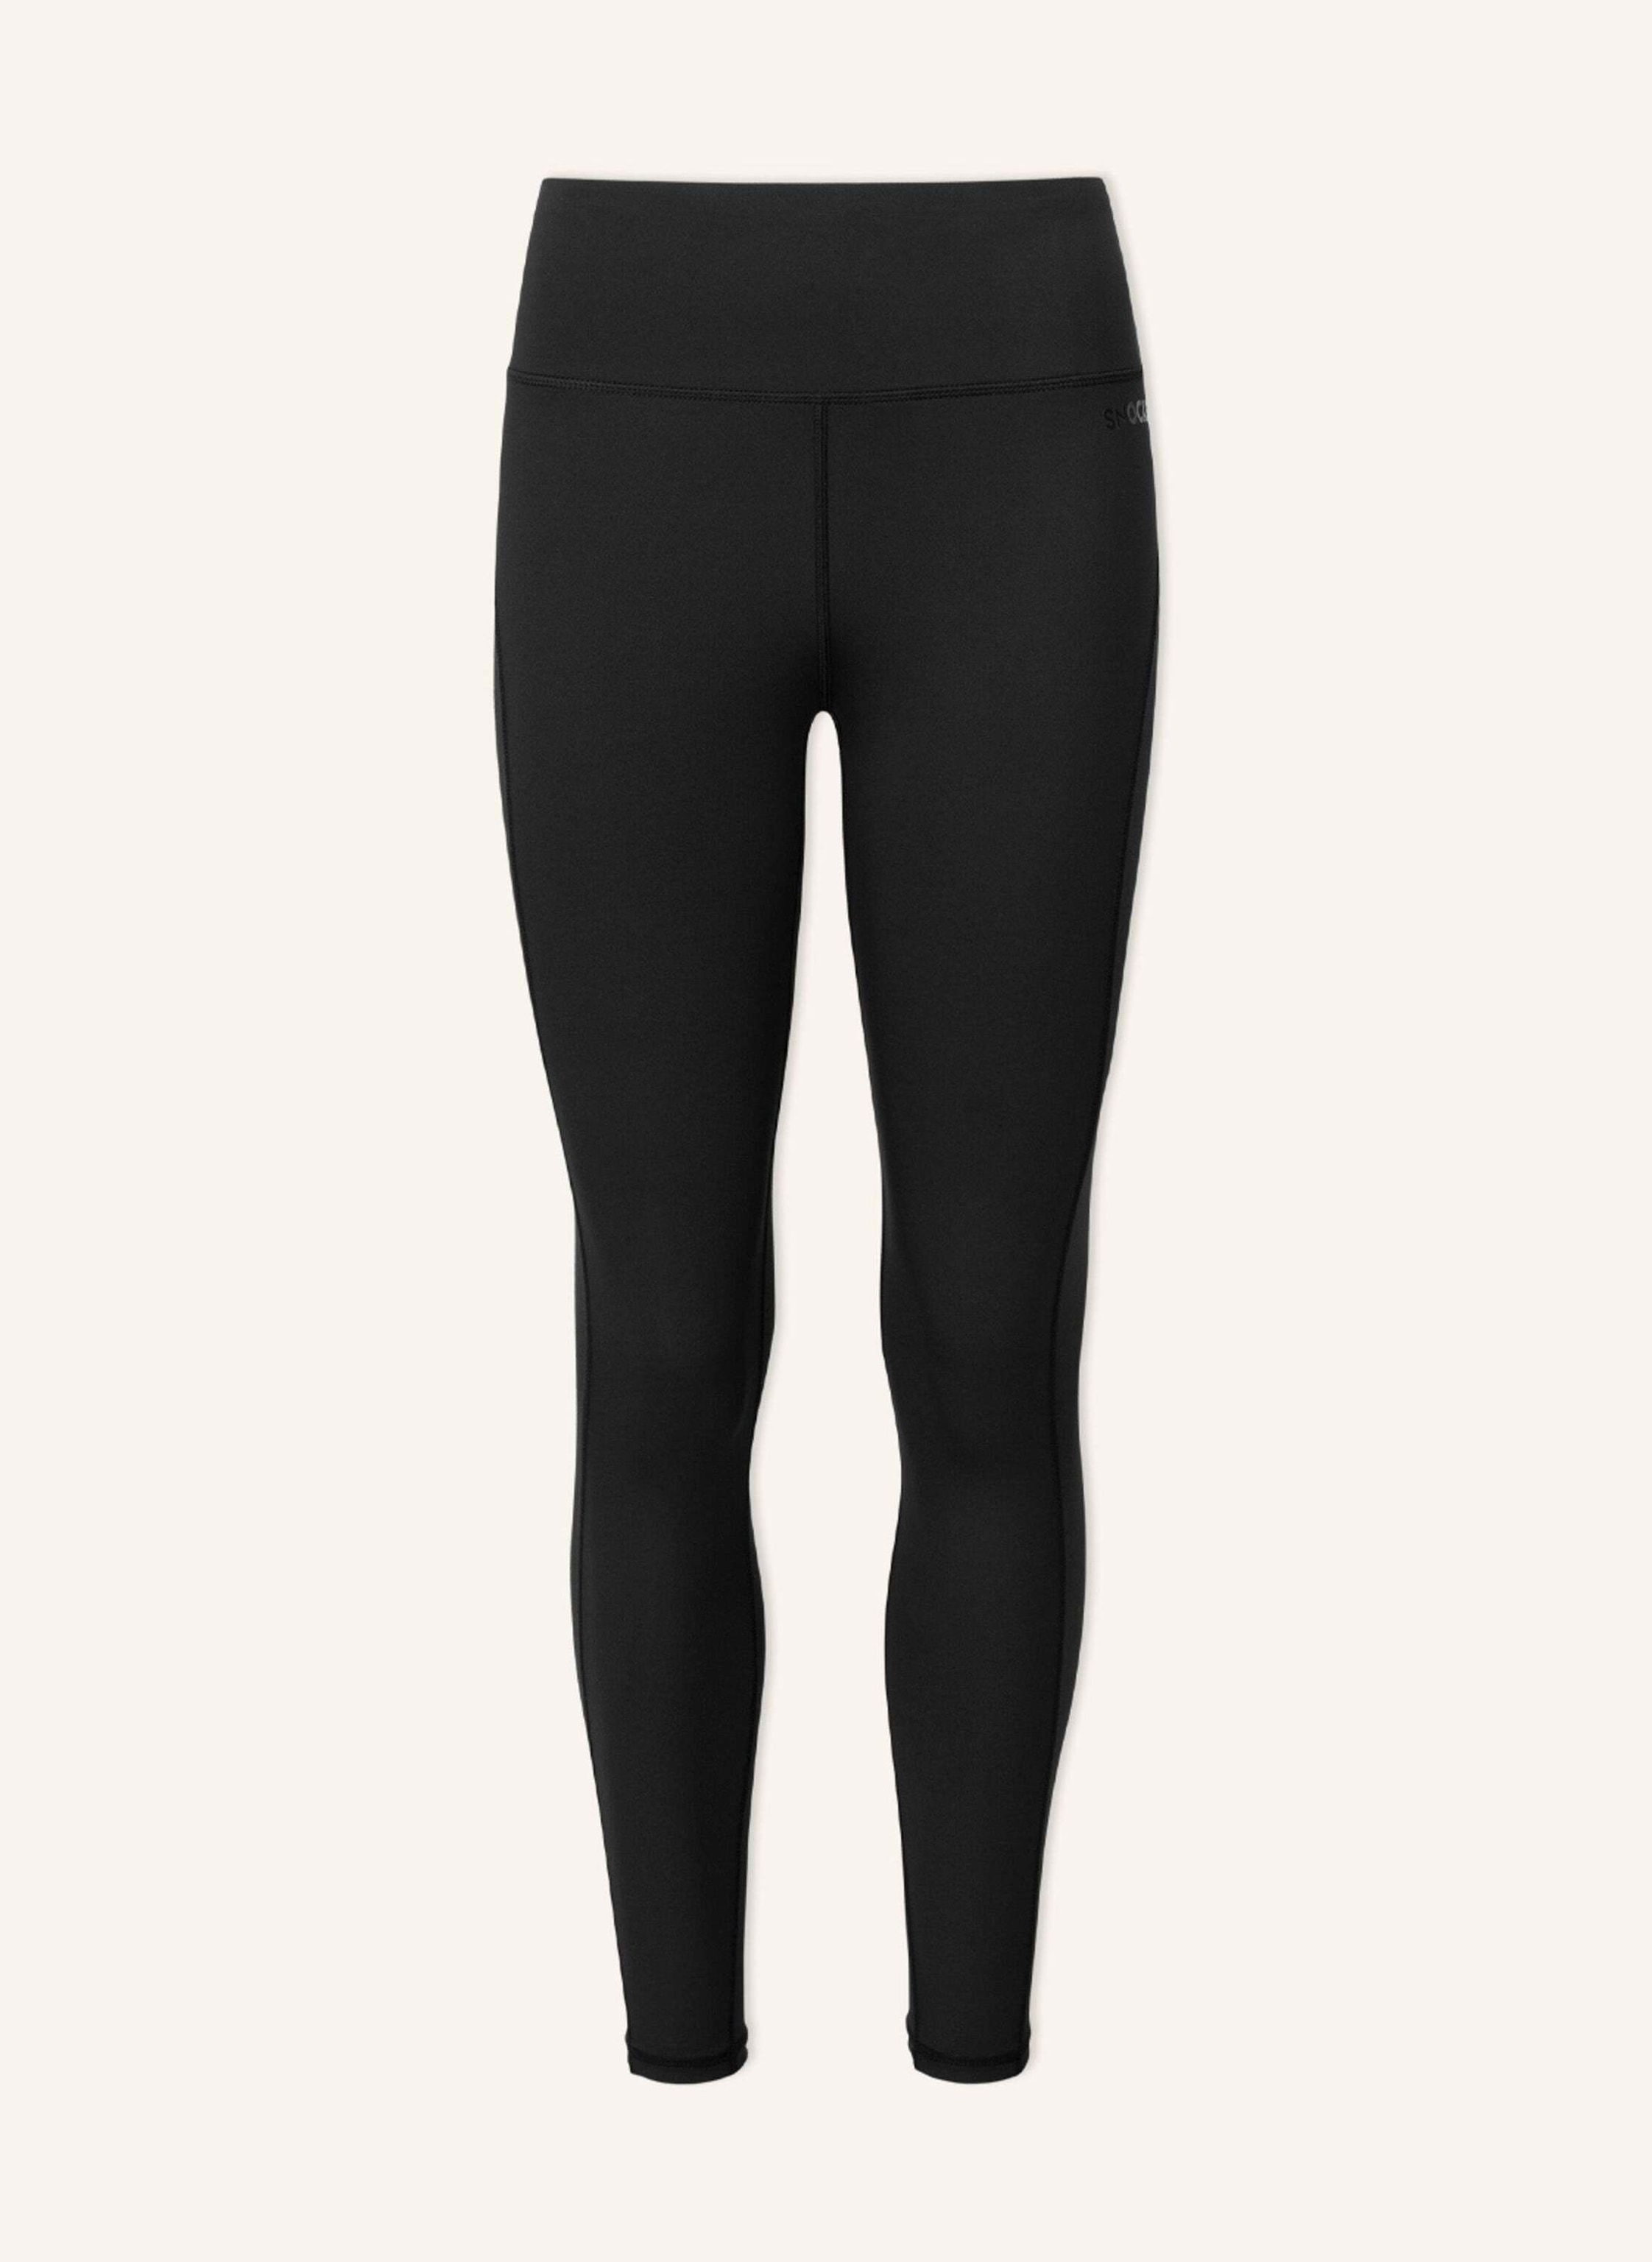 Damen Sport Leggings schwarz-grau mit Taschen - Online günstig kaufen